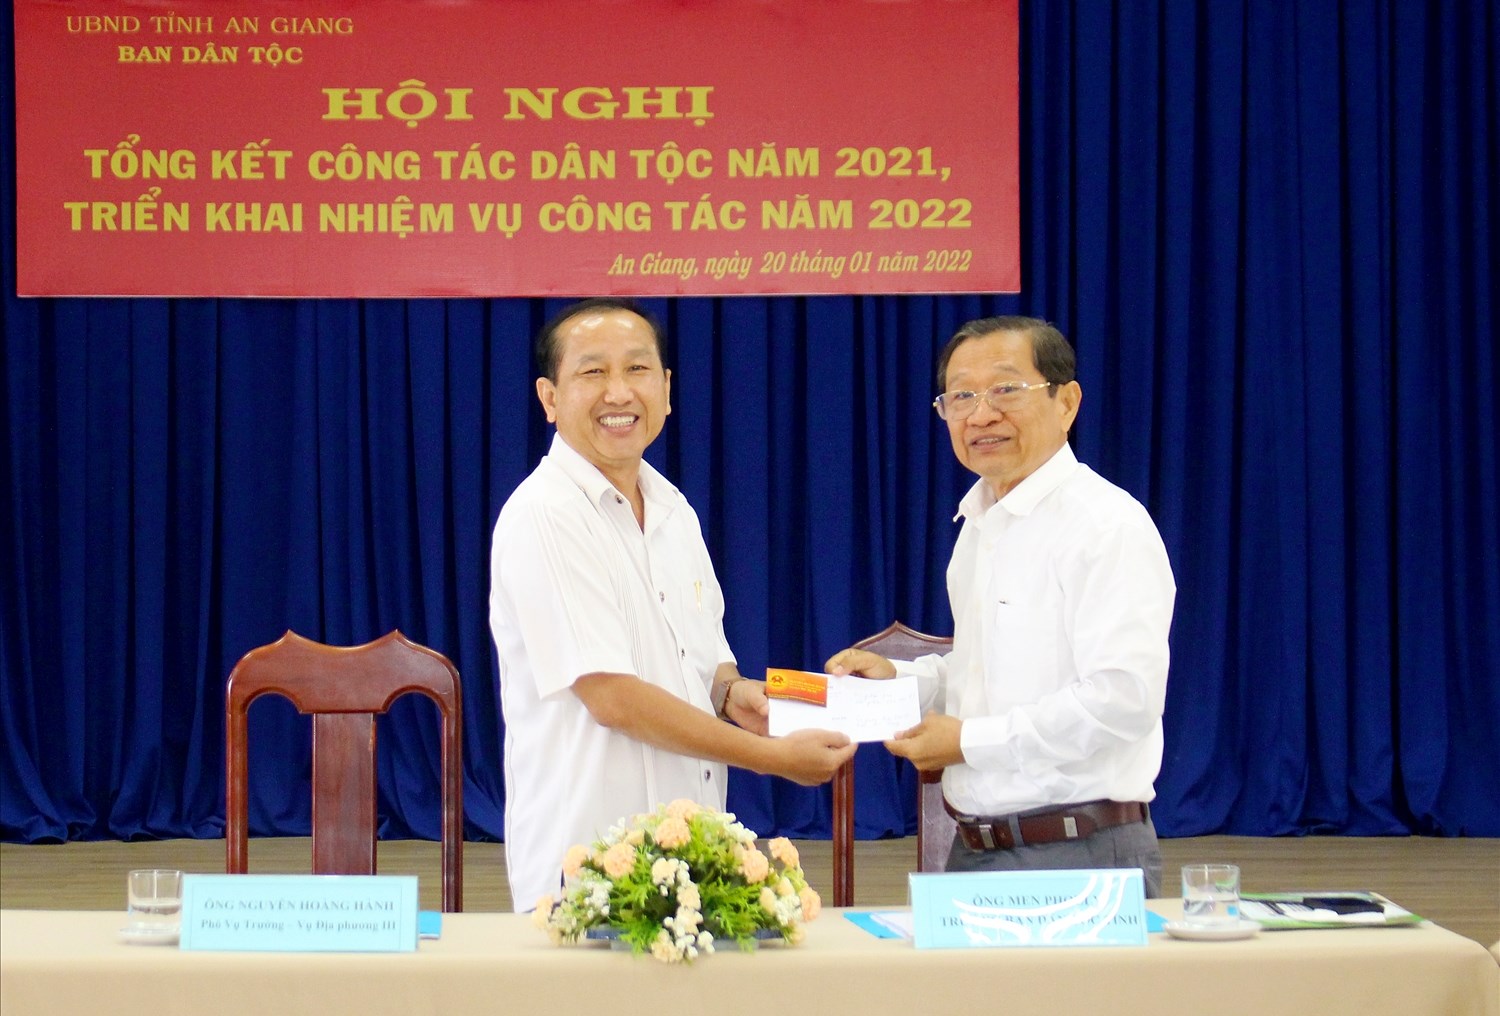 Phó Vụ trưởng Vụ Địa phương III Nguyễn Hoàng Hành trao hỗ trợ cho tỉnh An Giang